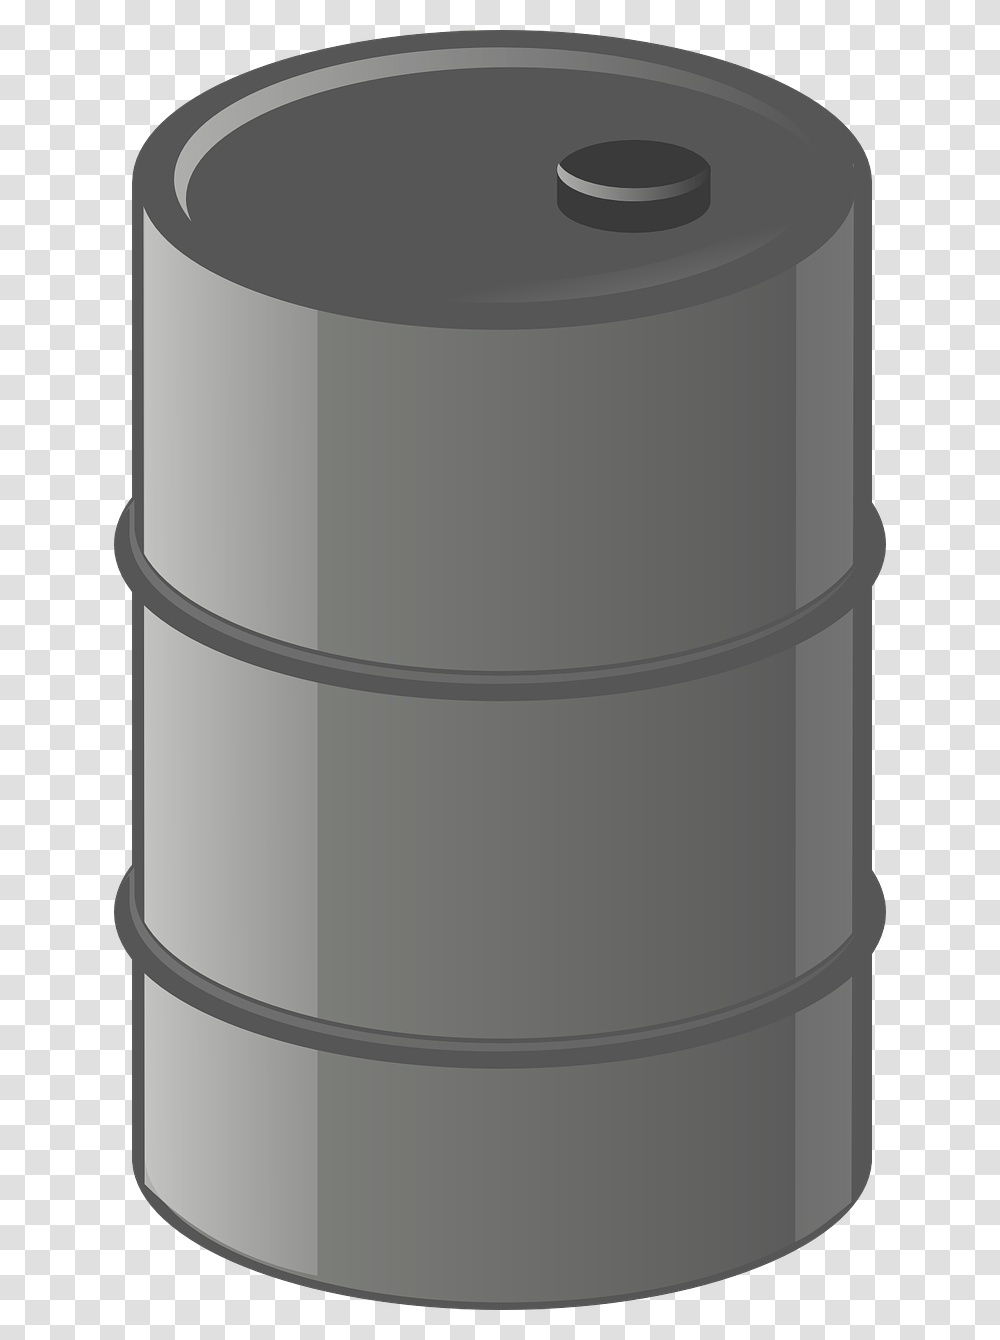 Oil Barrel Clip Art, Cylinder, Rain Barrel, Keg Transparent Png